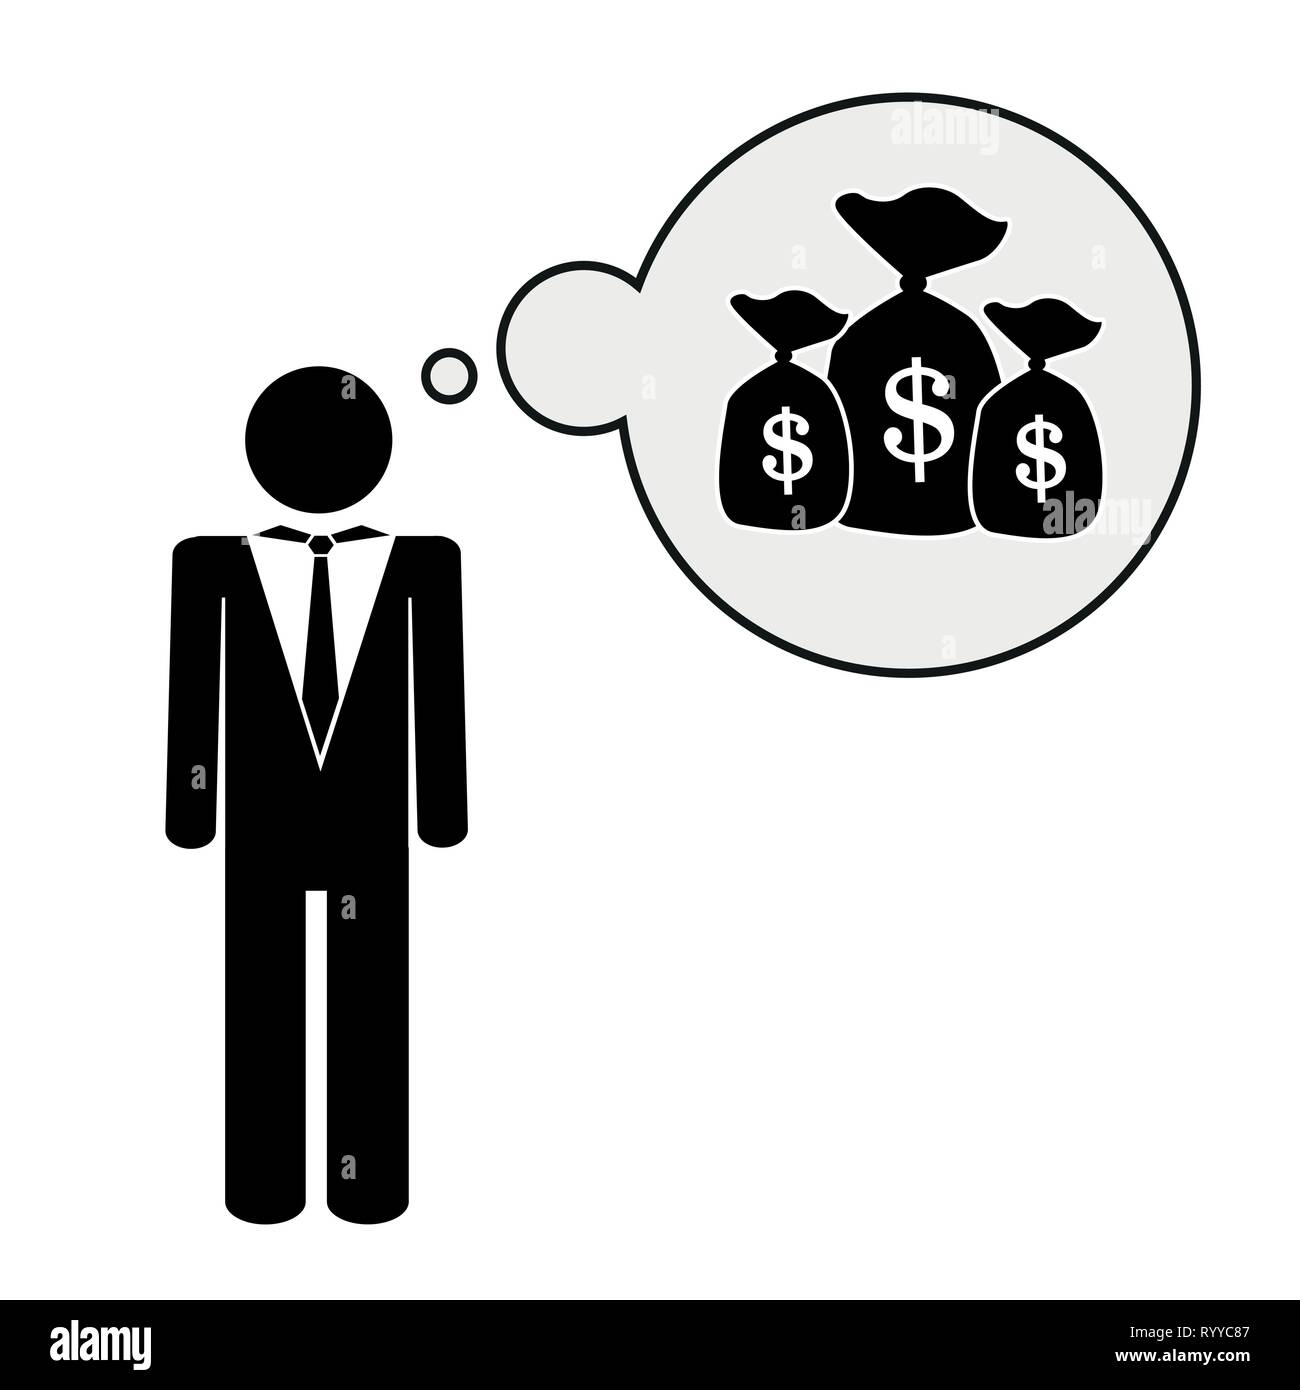 Geschäftsmann denkt über eine Menge Geld Piktogramm Vektor-illustration EPS 10. Stock Vektor